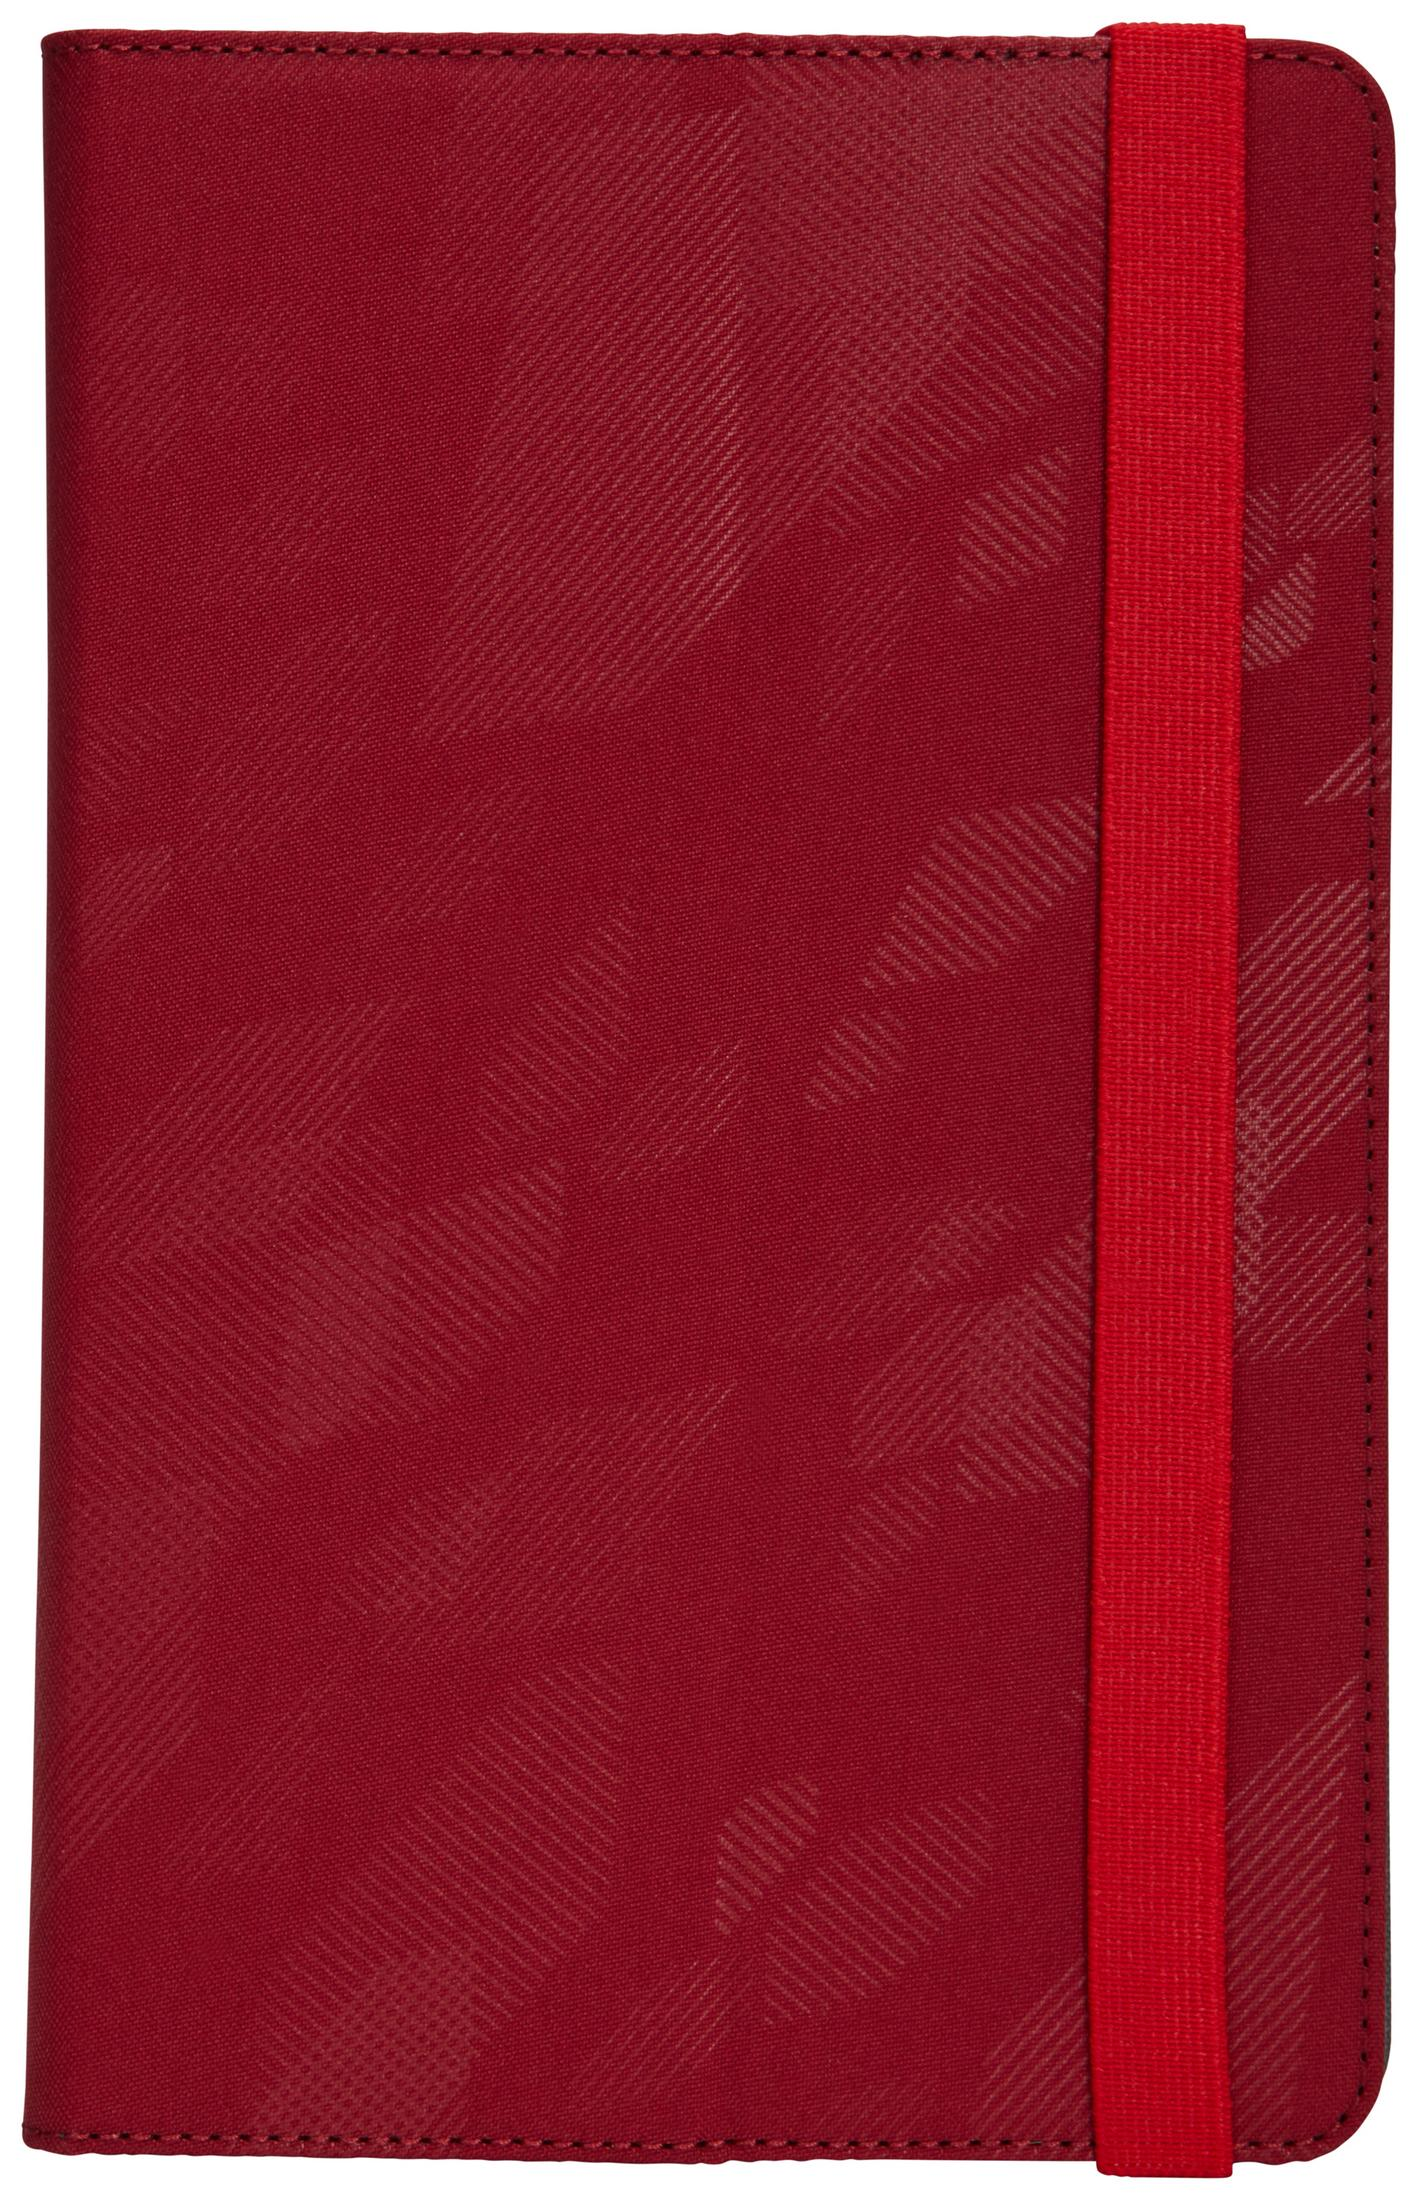 CASE LOGIC Folio für Boxcar Bookcover Polyester, Bookcover Universal